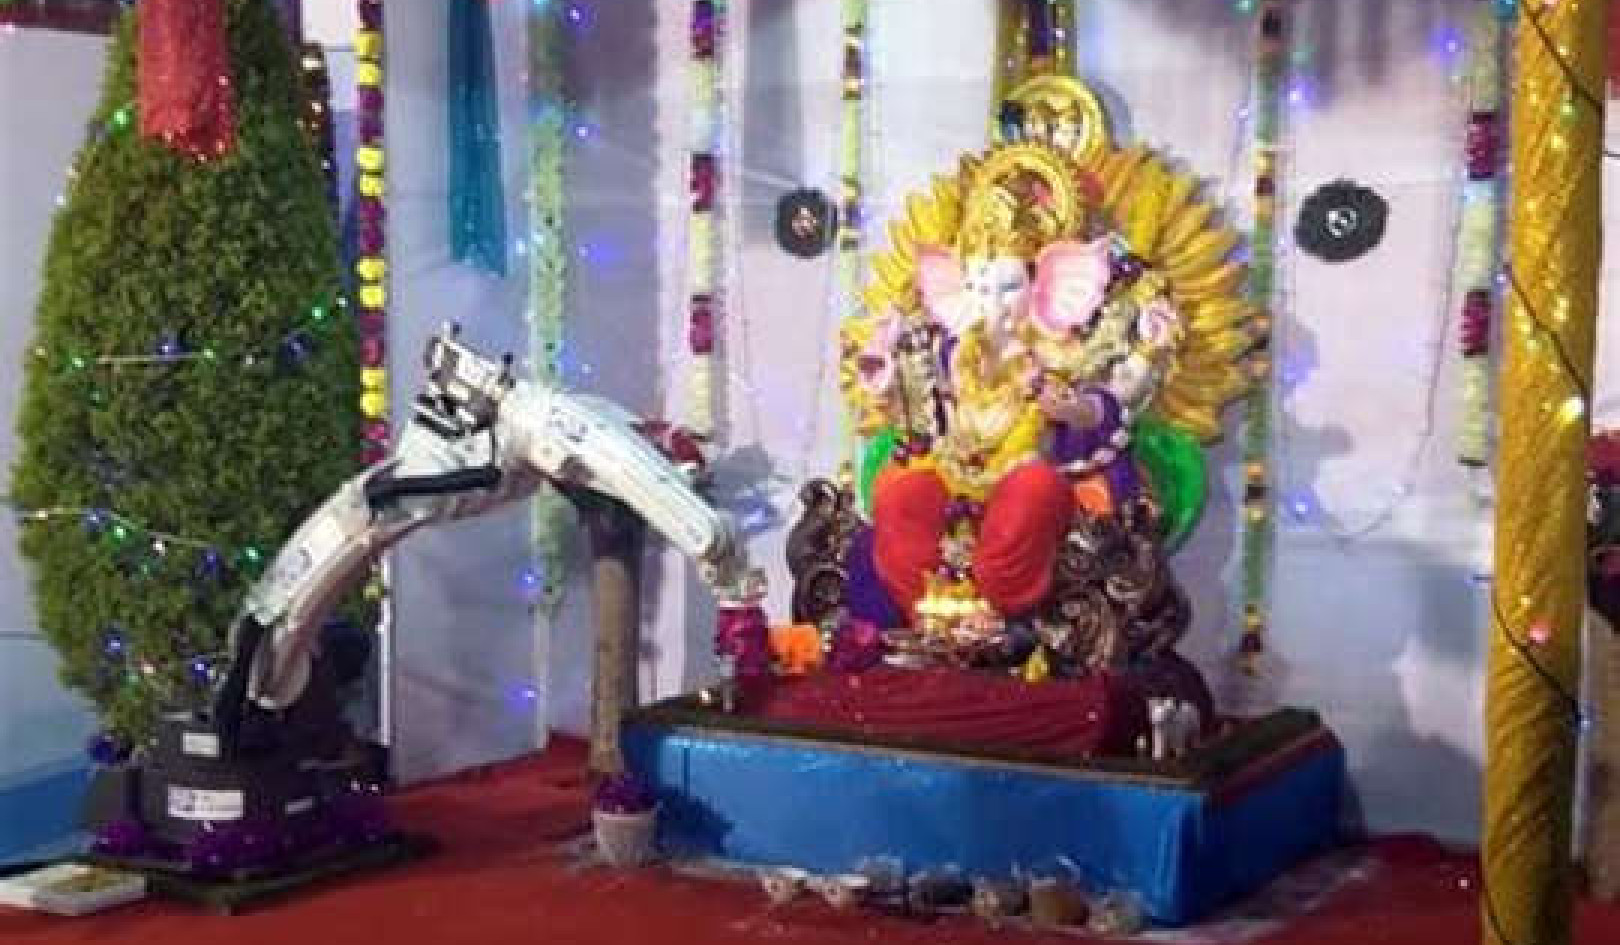 Có phải robot đang thực hiện các nghi lễ của đạo Hindu và thay thế những người thờ cúng?